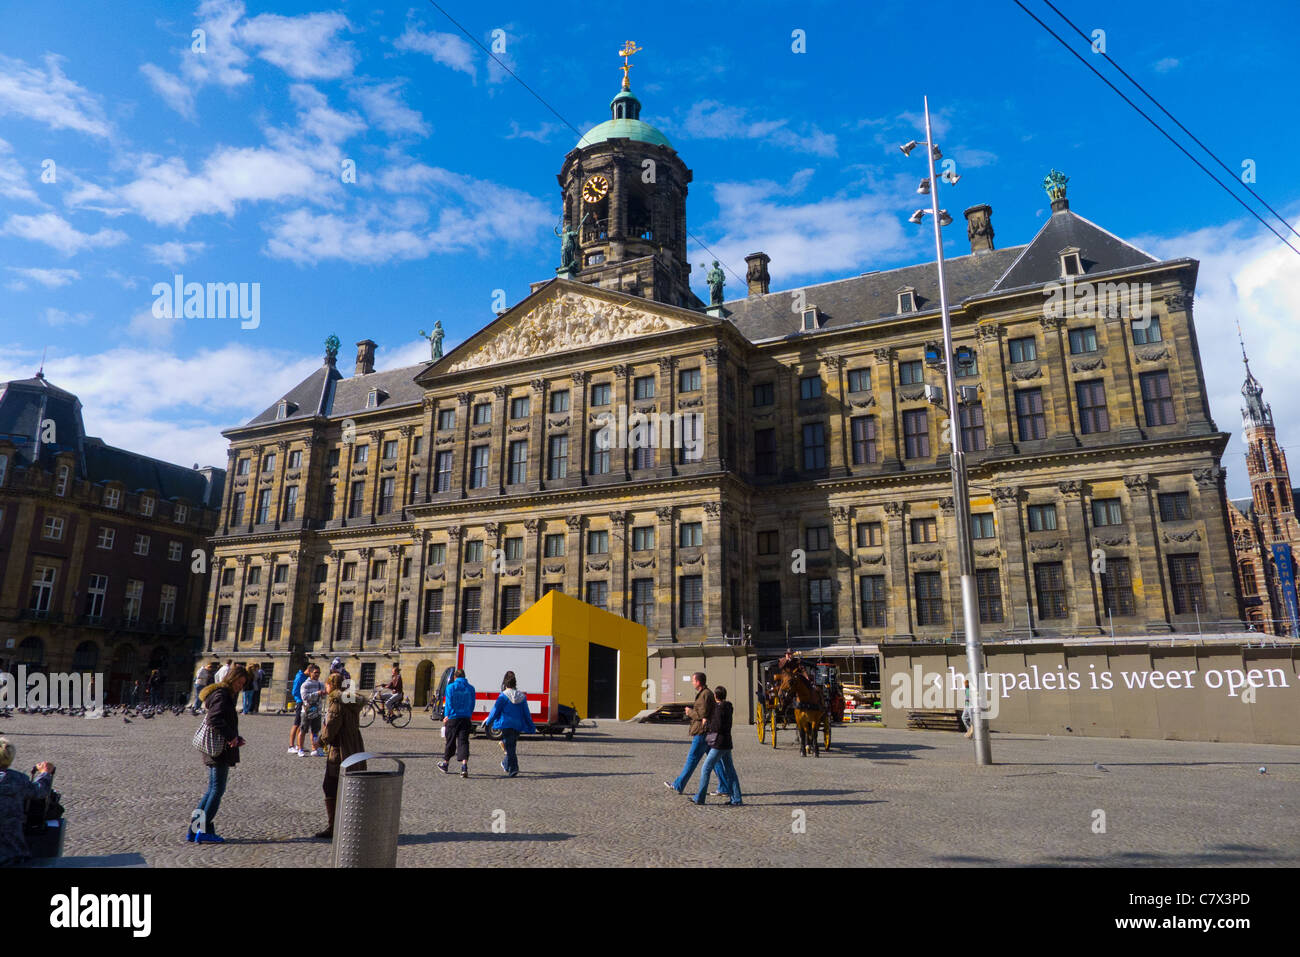 Vue sur le Palais Royal (Koninklijk Paleis) de la Place du Dam, Amsterdam, Pays-Bas. Banque D'Images